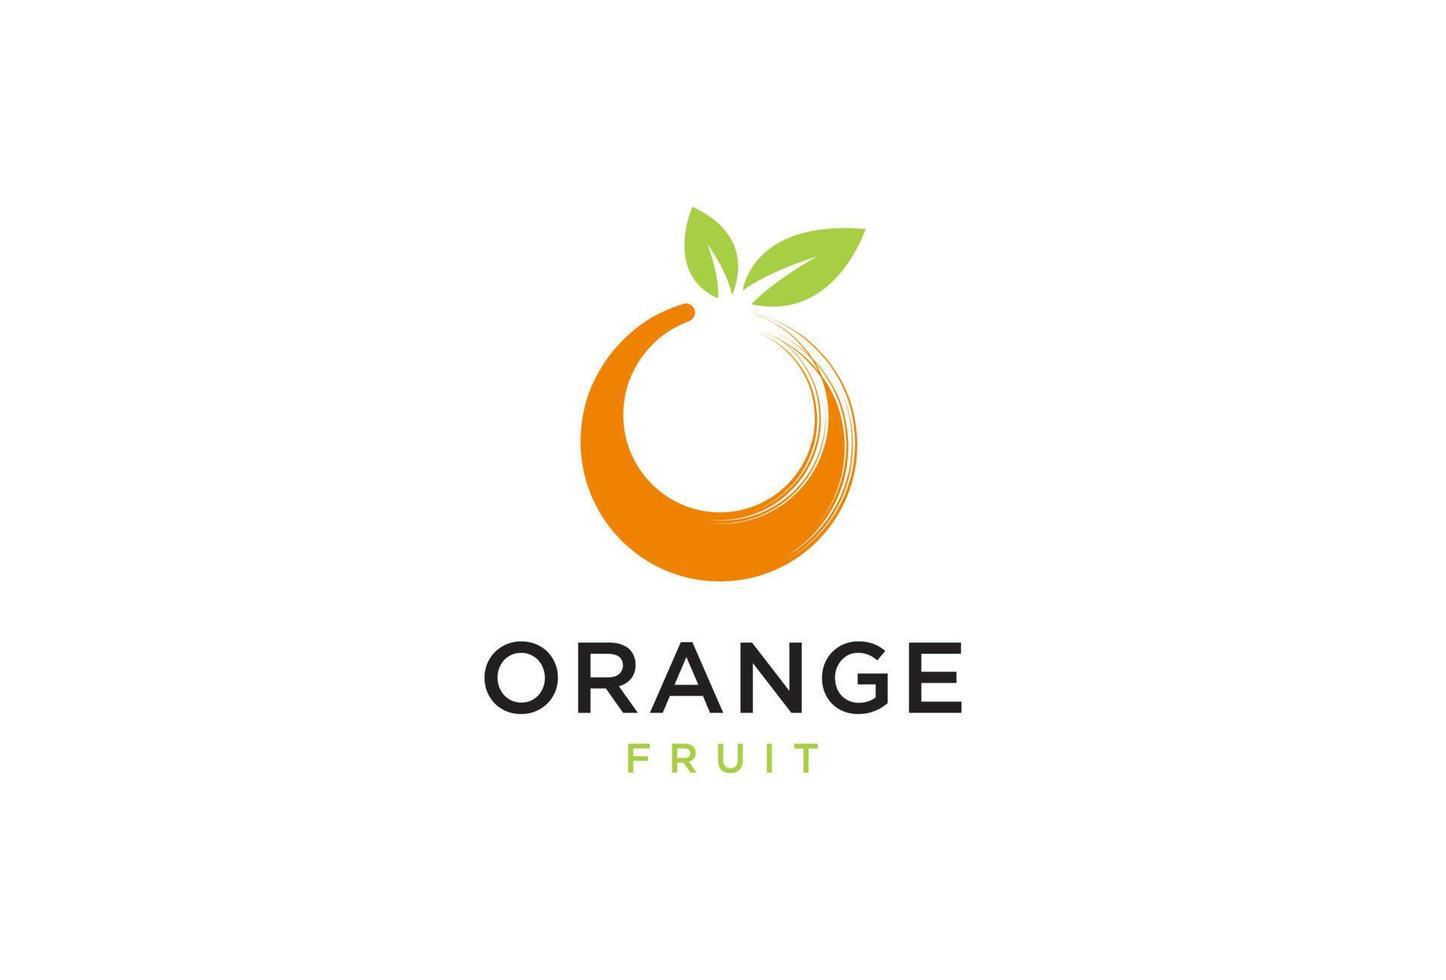 Fresh Orange Fruit, Slice of Lemon Lime Grapefruit Citrus with swirl letter initial O logo design inspiration vector